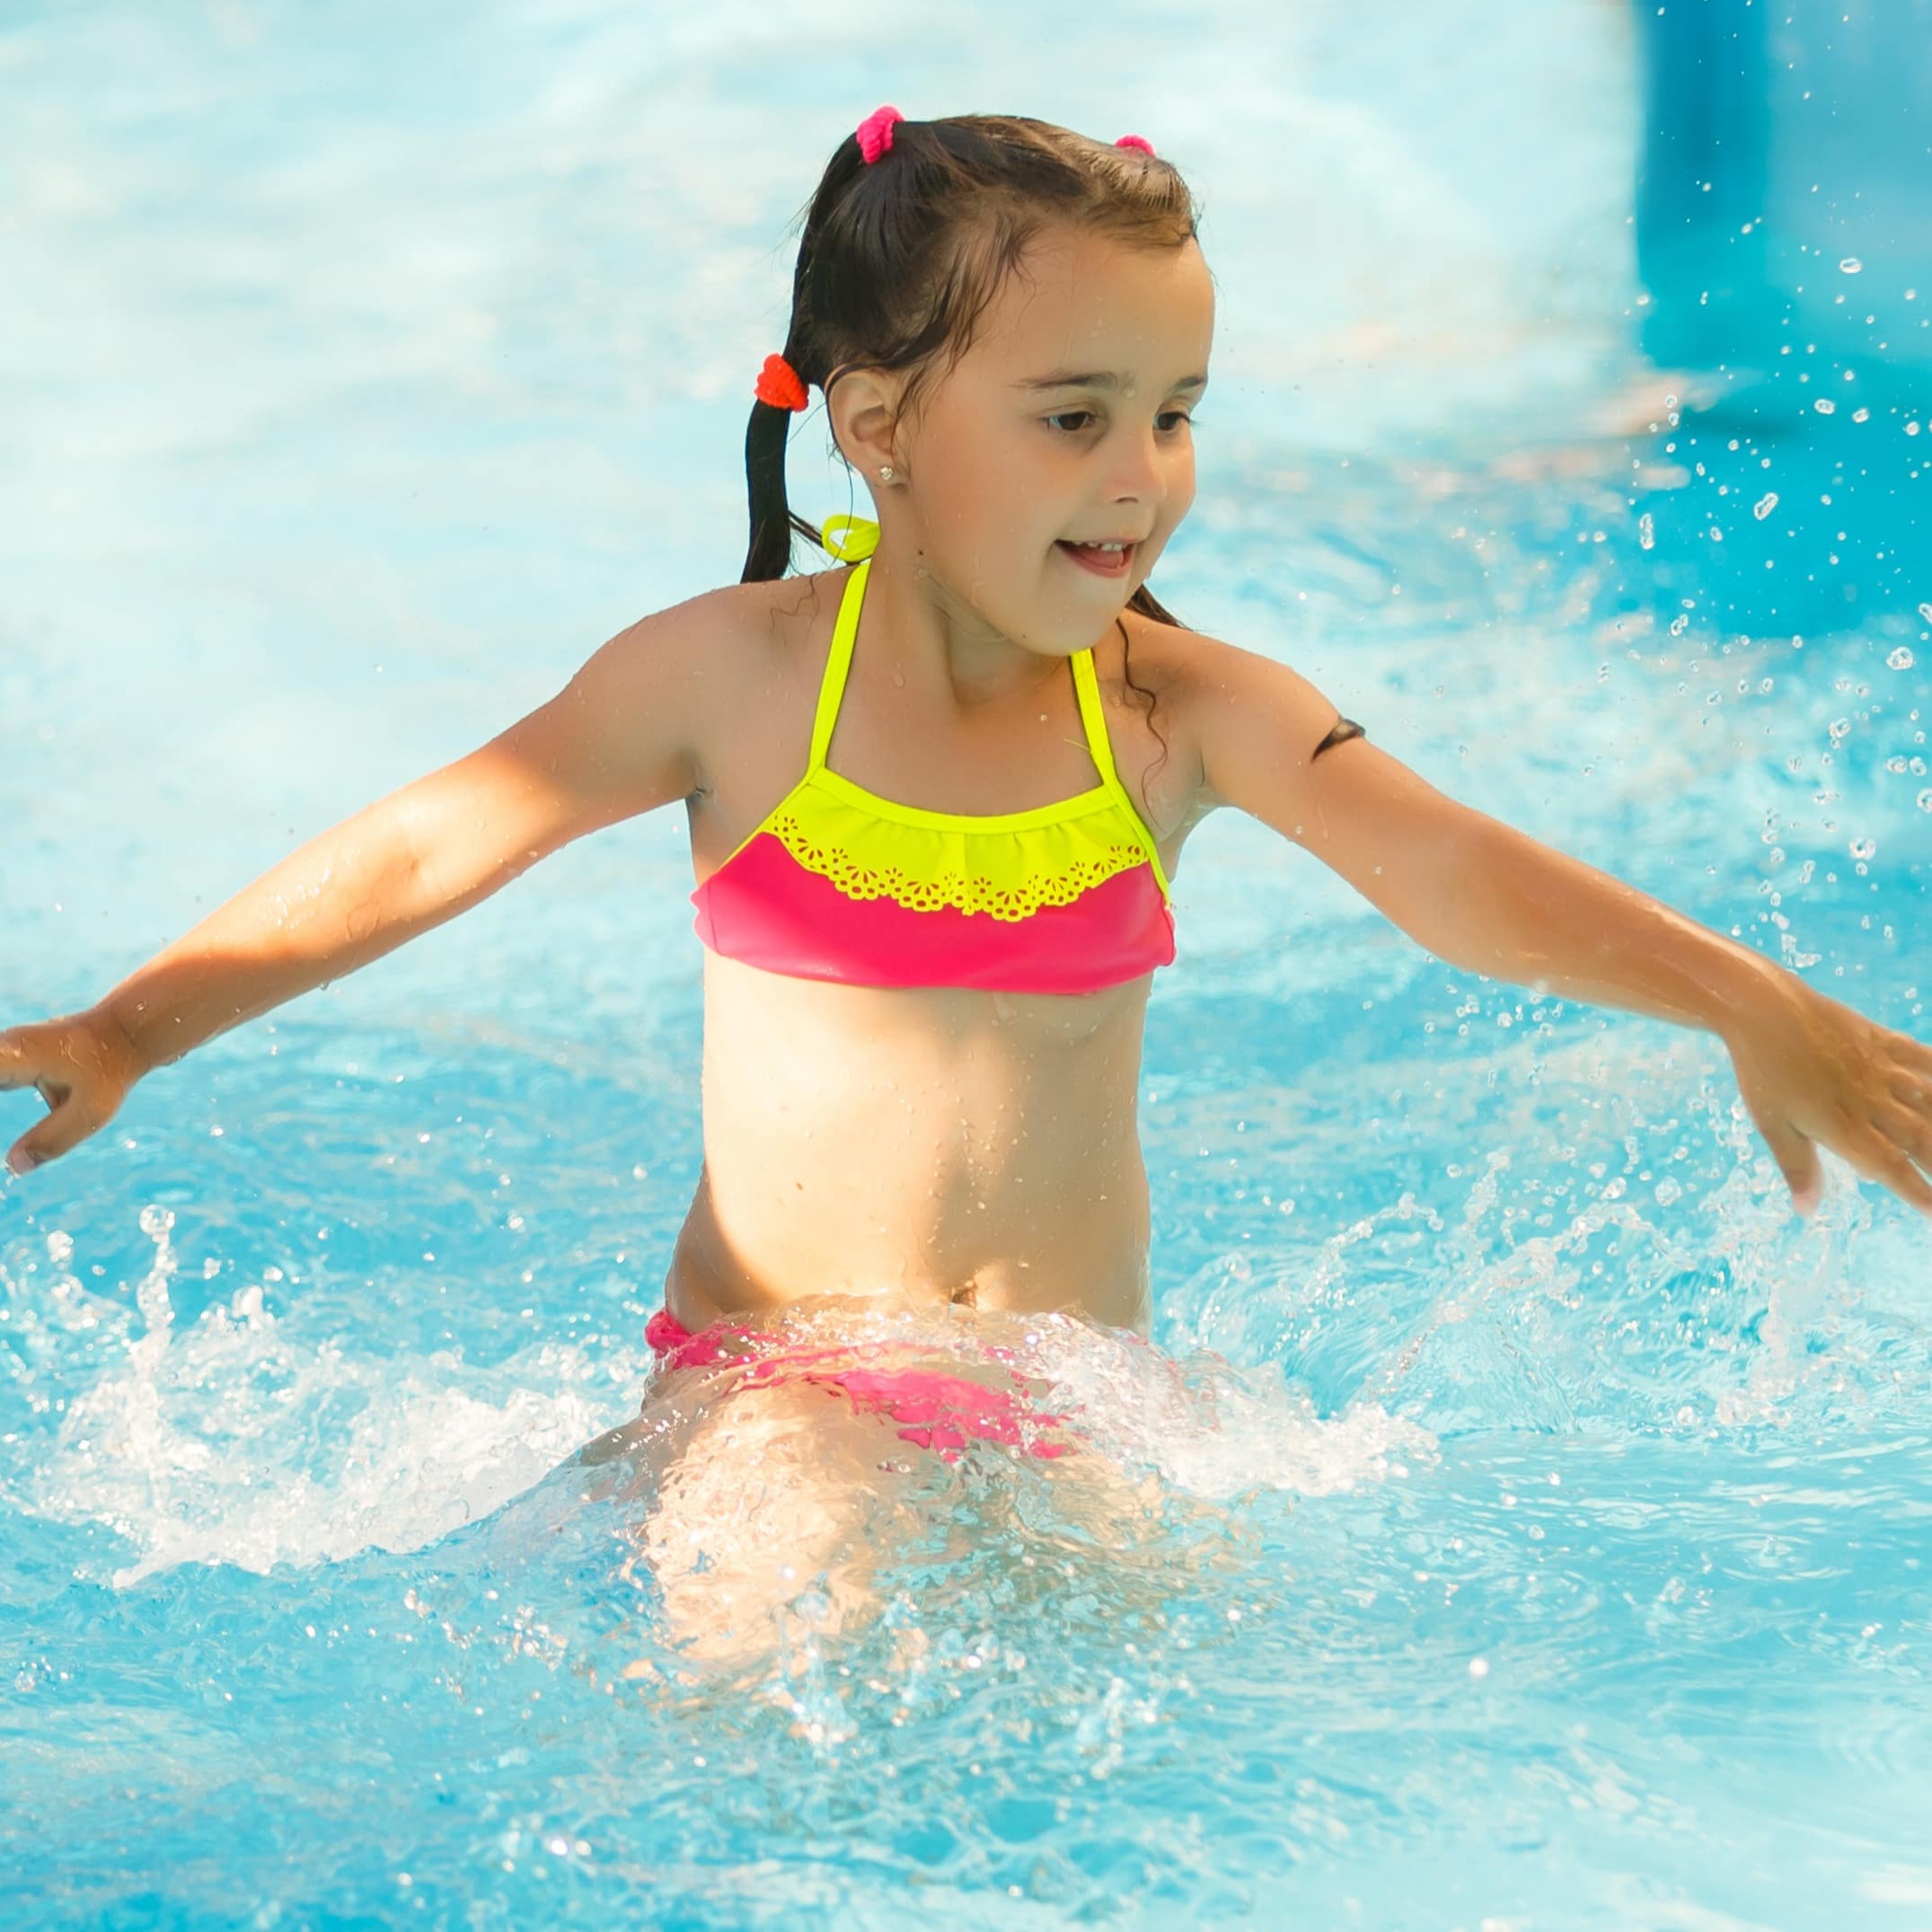 Mädchen in einem gelb-pinken Bikini im Wasser eines Schwimmbads.